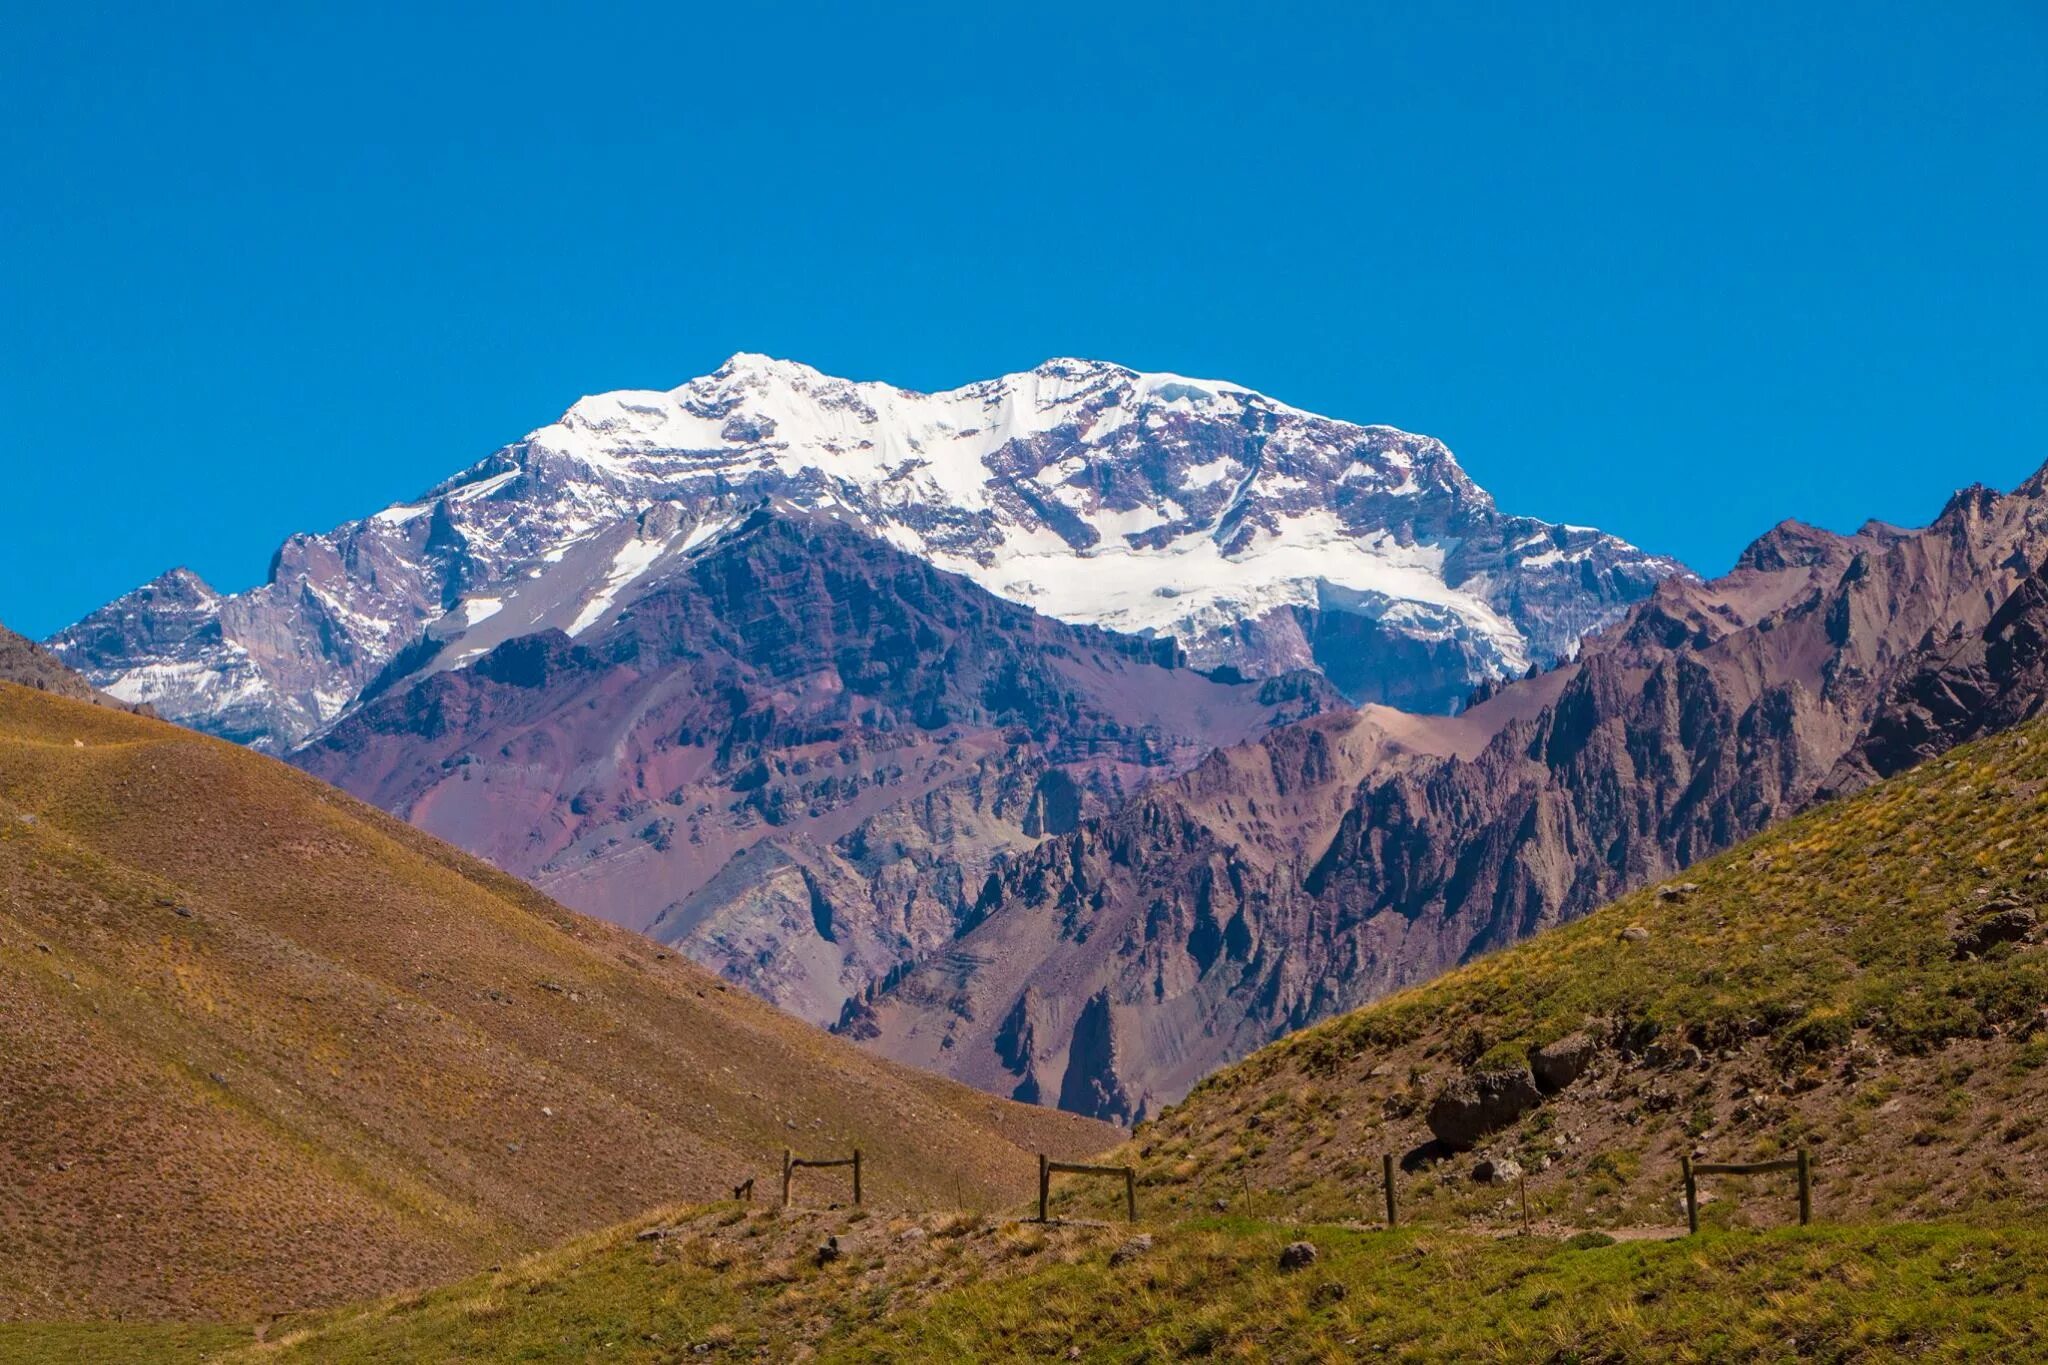 Страны находящиеся в андах. Гора Анды гора Аконкагуа. Южная Америка Аконкагуа Аргентина. Горы Южной Америки Анды и горы Аконкагуа. Самая высокая вершина - гора Аконкагуа, 6960 м.